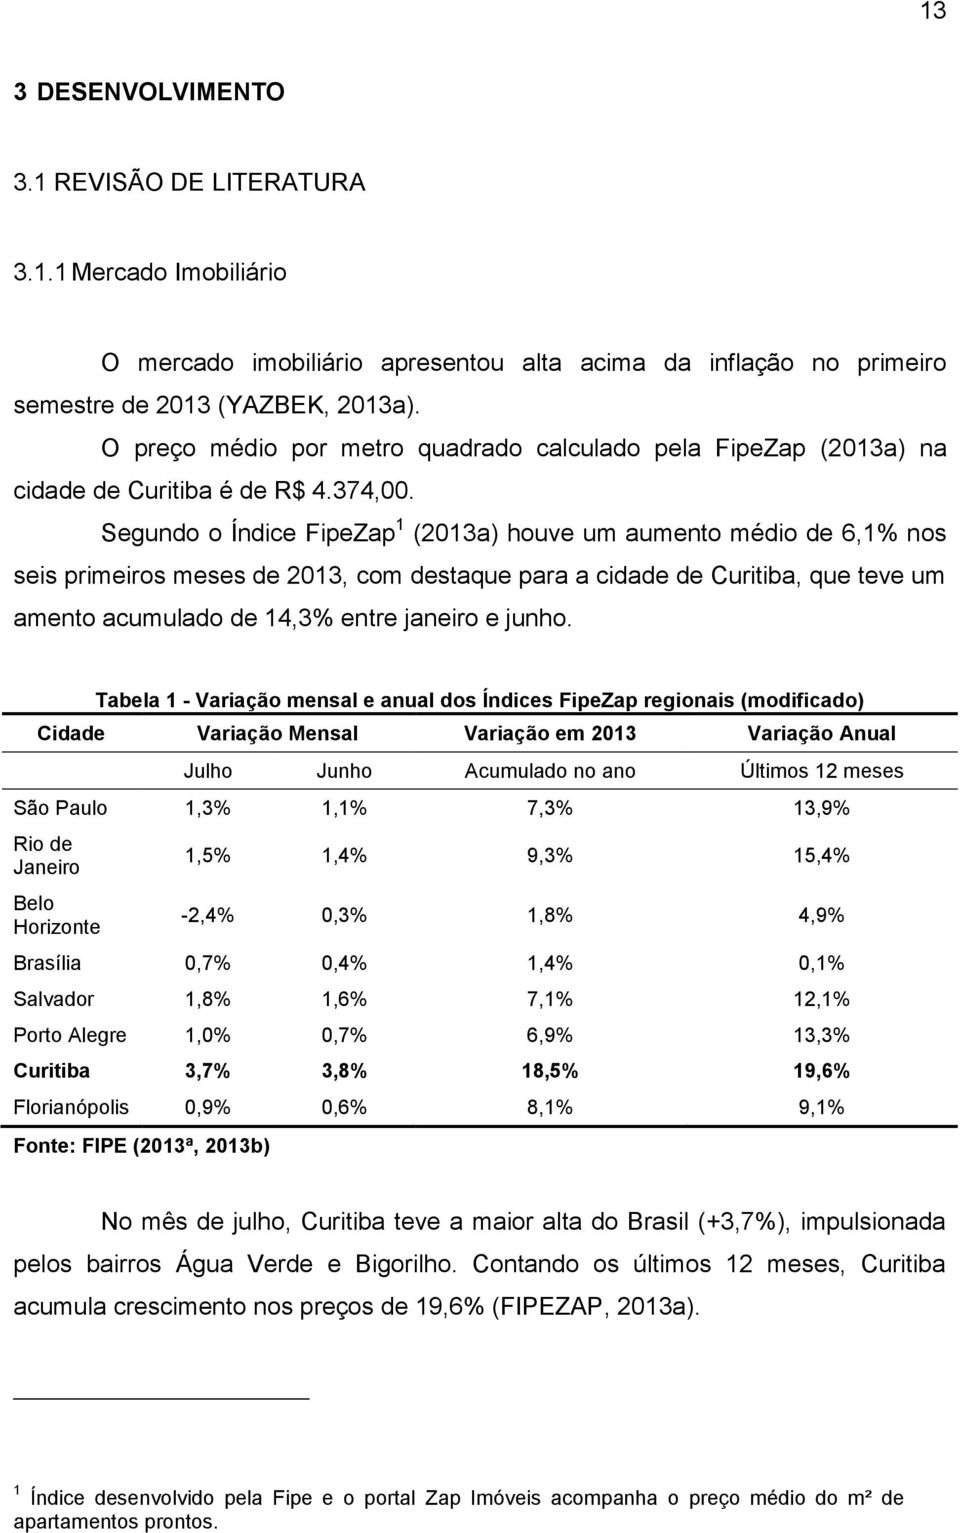 Segundo o Índice FipeZap 1 (2013a) houve um aumento médio de 6,1% nos seis primeiros meses de 2013, com destaque para a cidade de Curitiba, que teve um amento acumulado de 14,3% entre janeiro e junho.